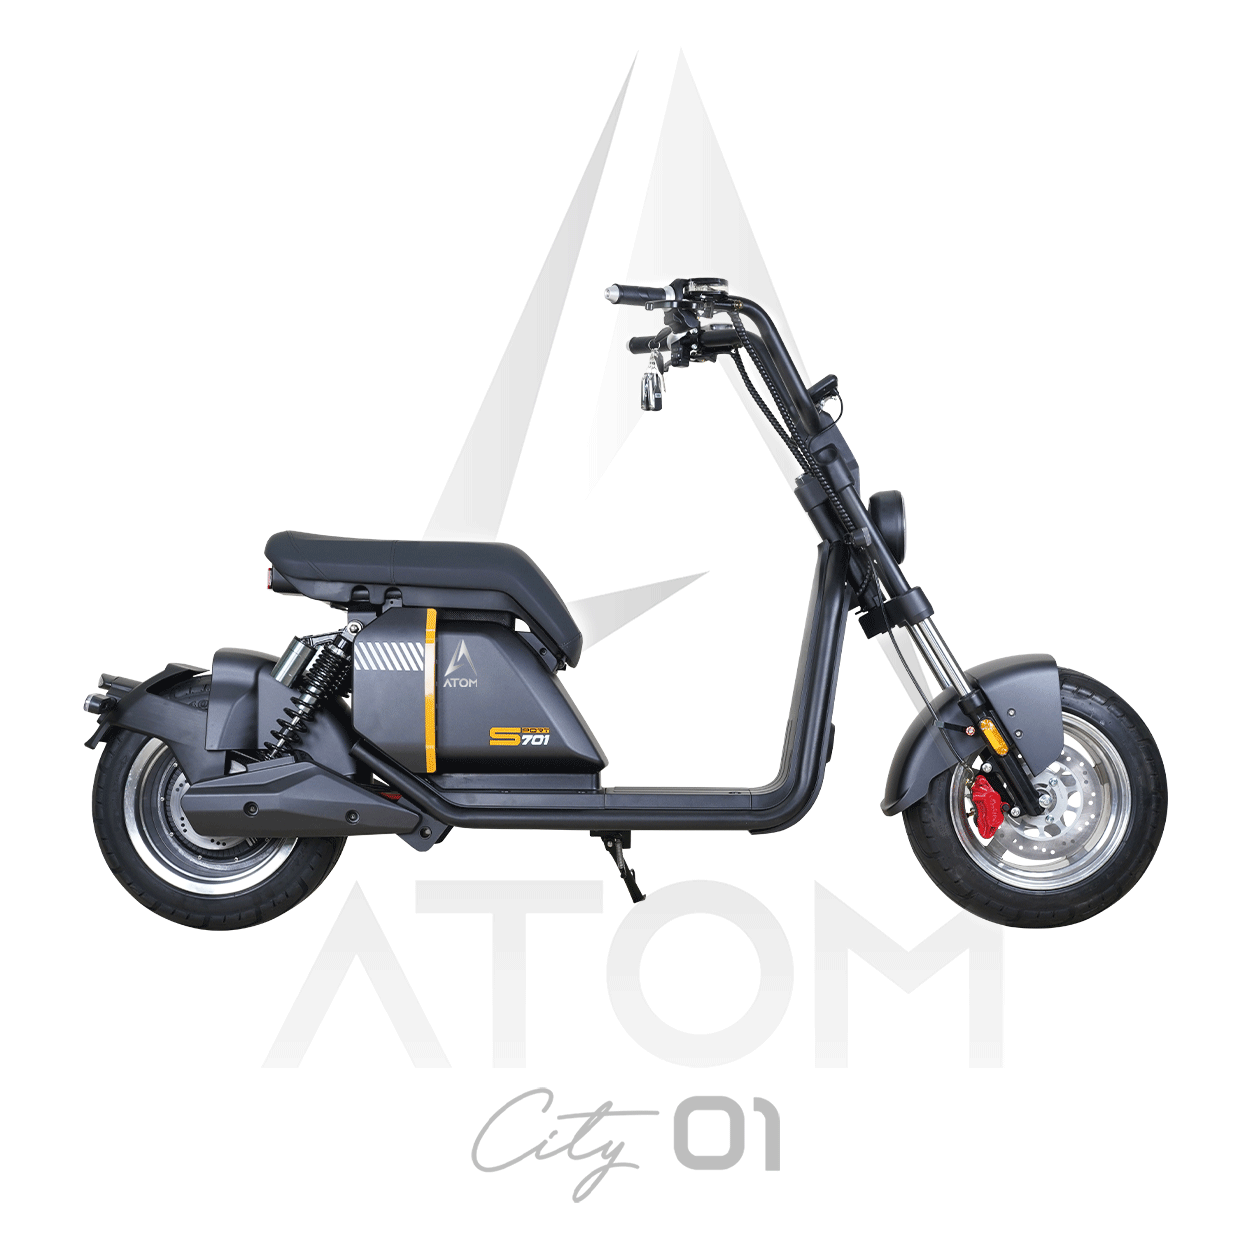 Scooter électrique, Atom City 01 | 3000 W | 50 cc - Atom Motors